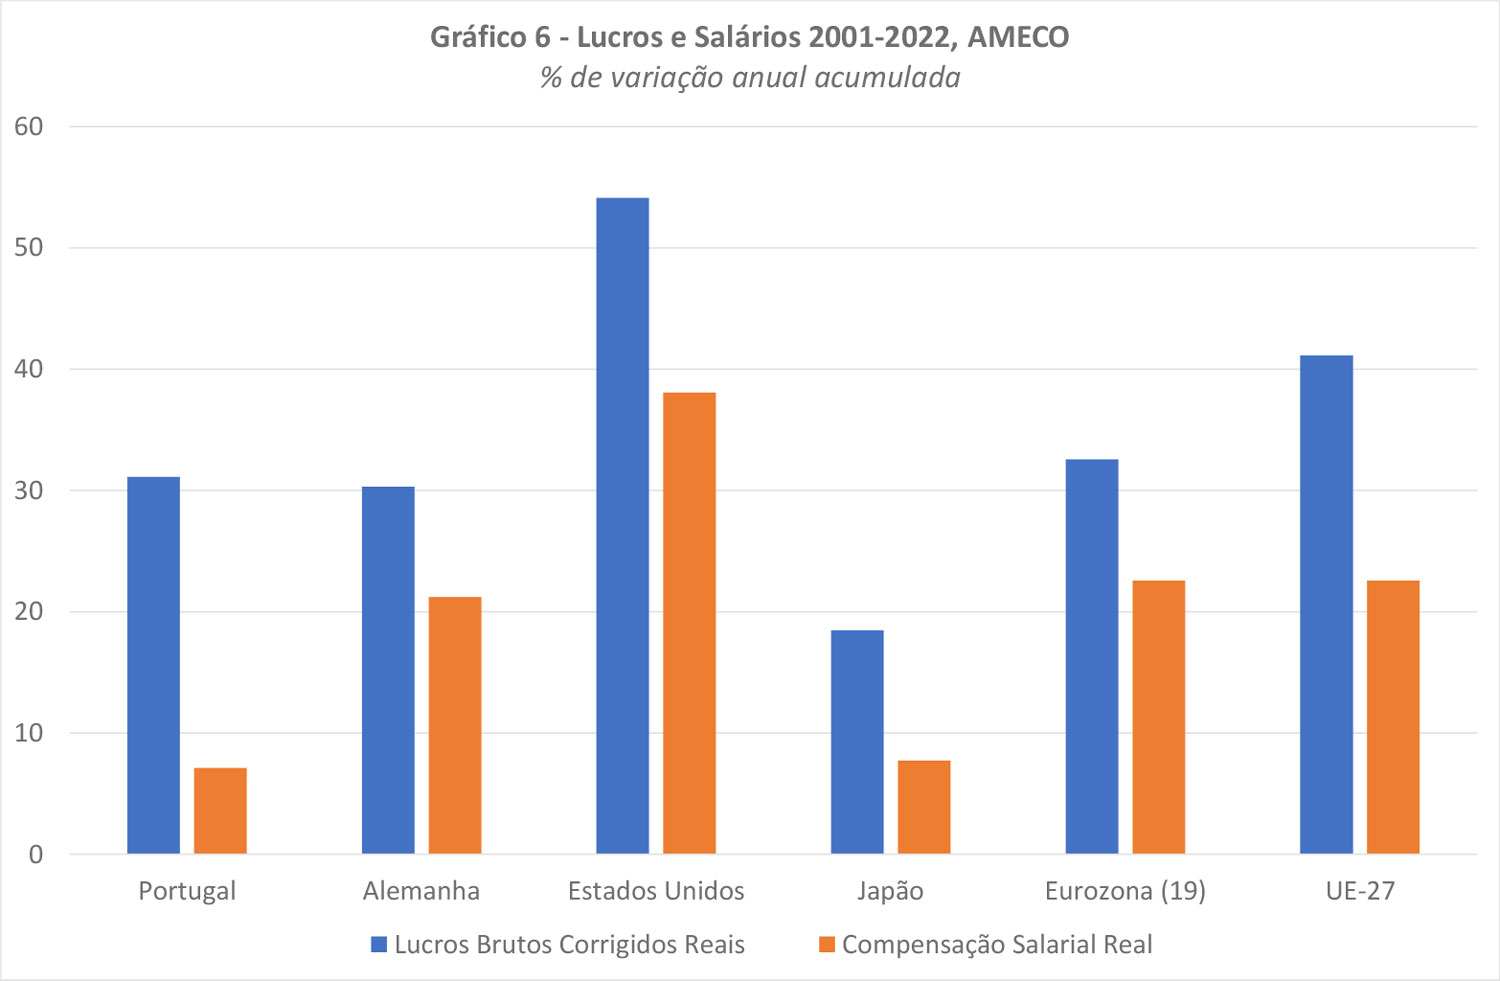 Lucros e Salários 2001-2022, AMECO